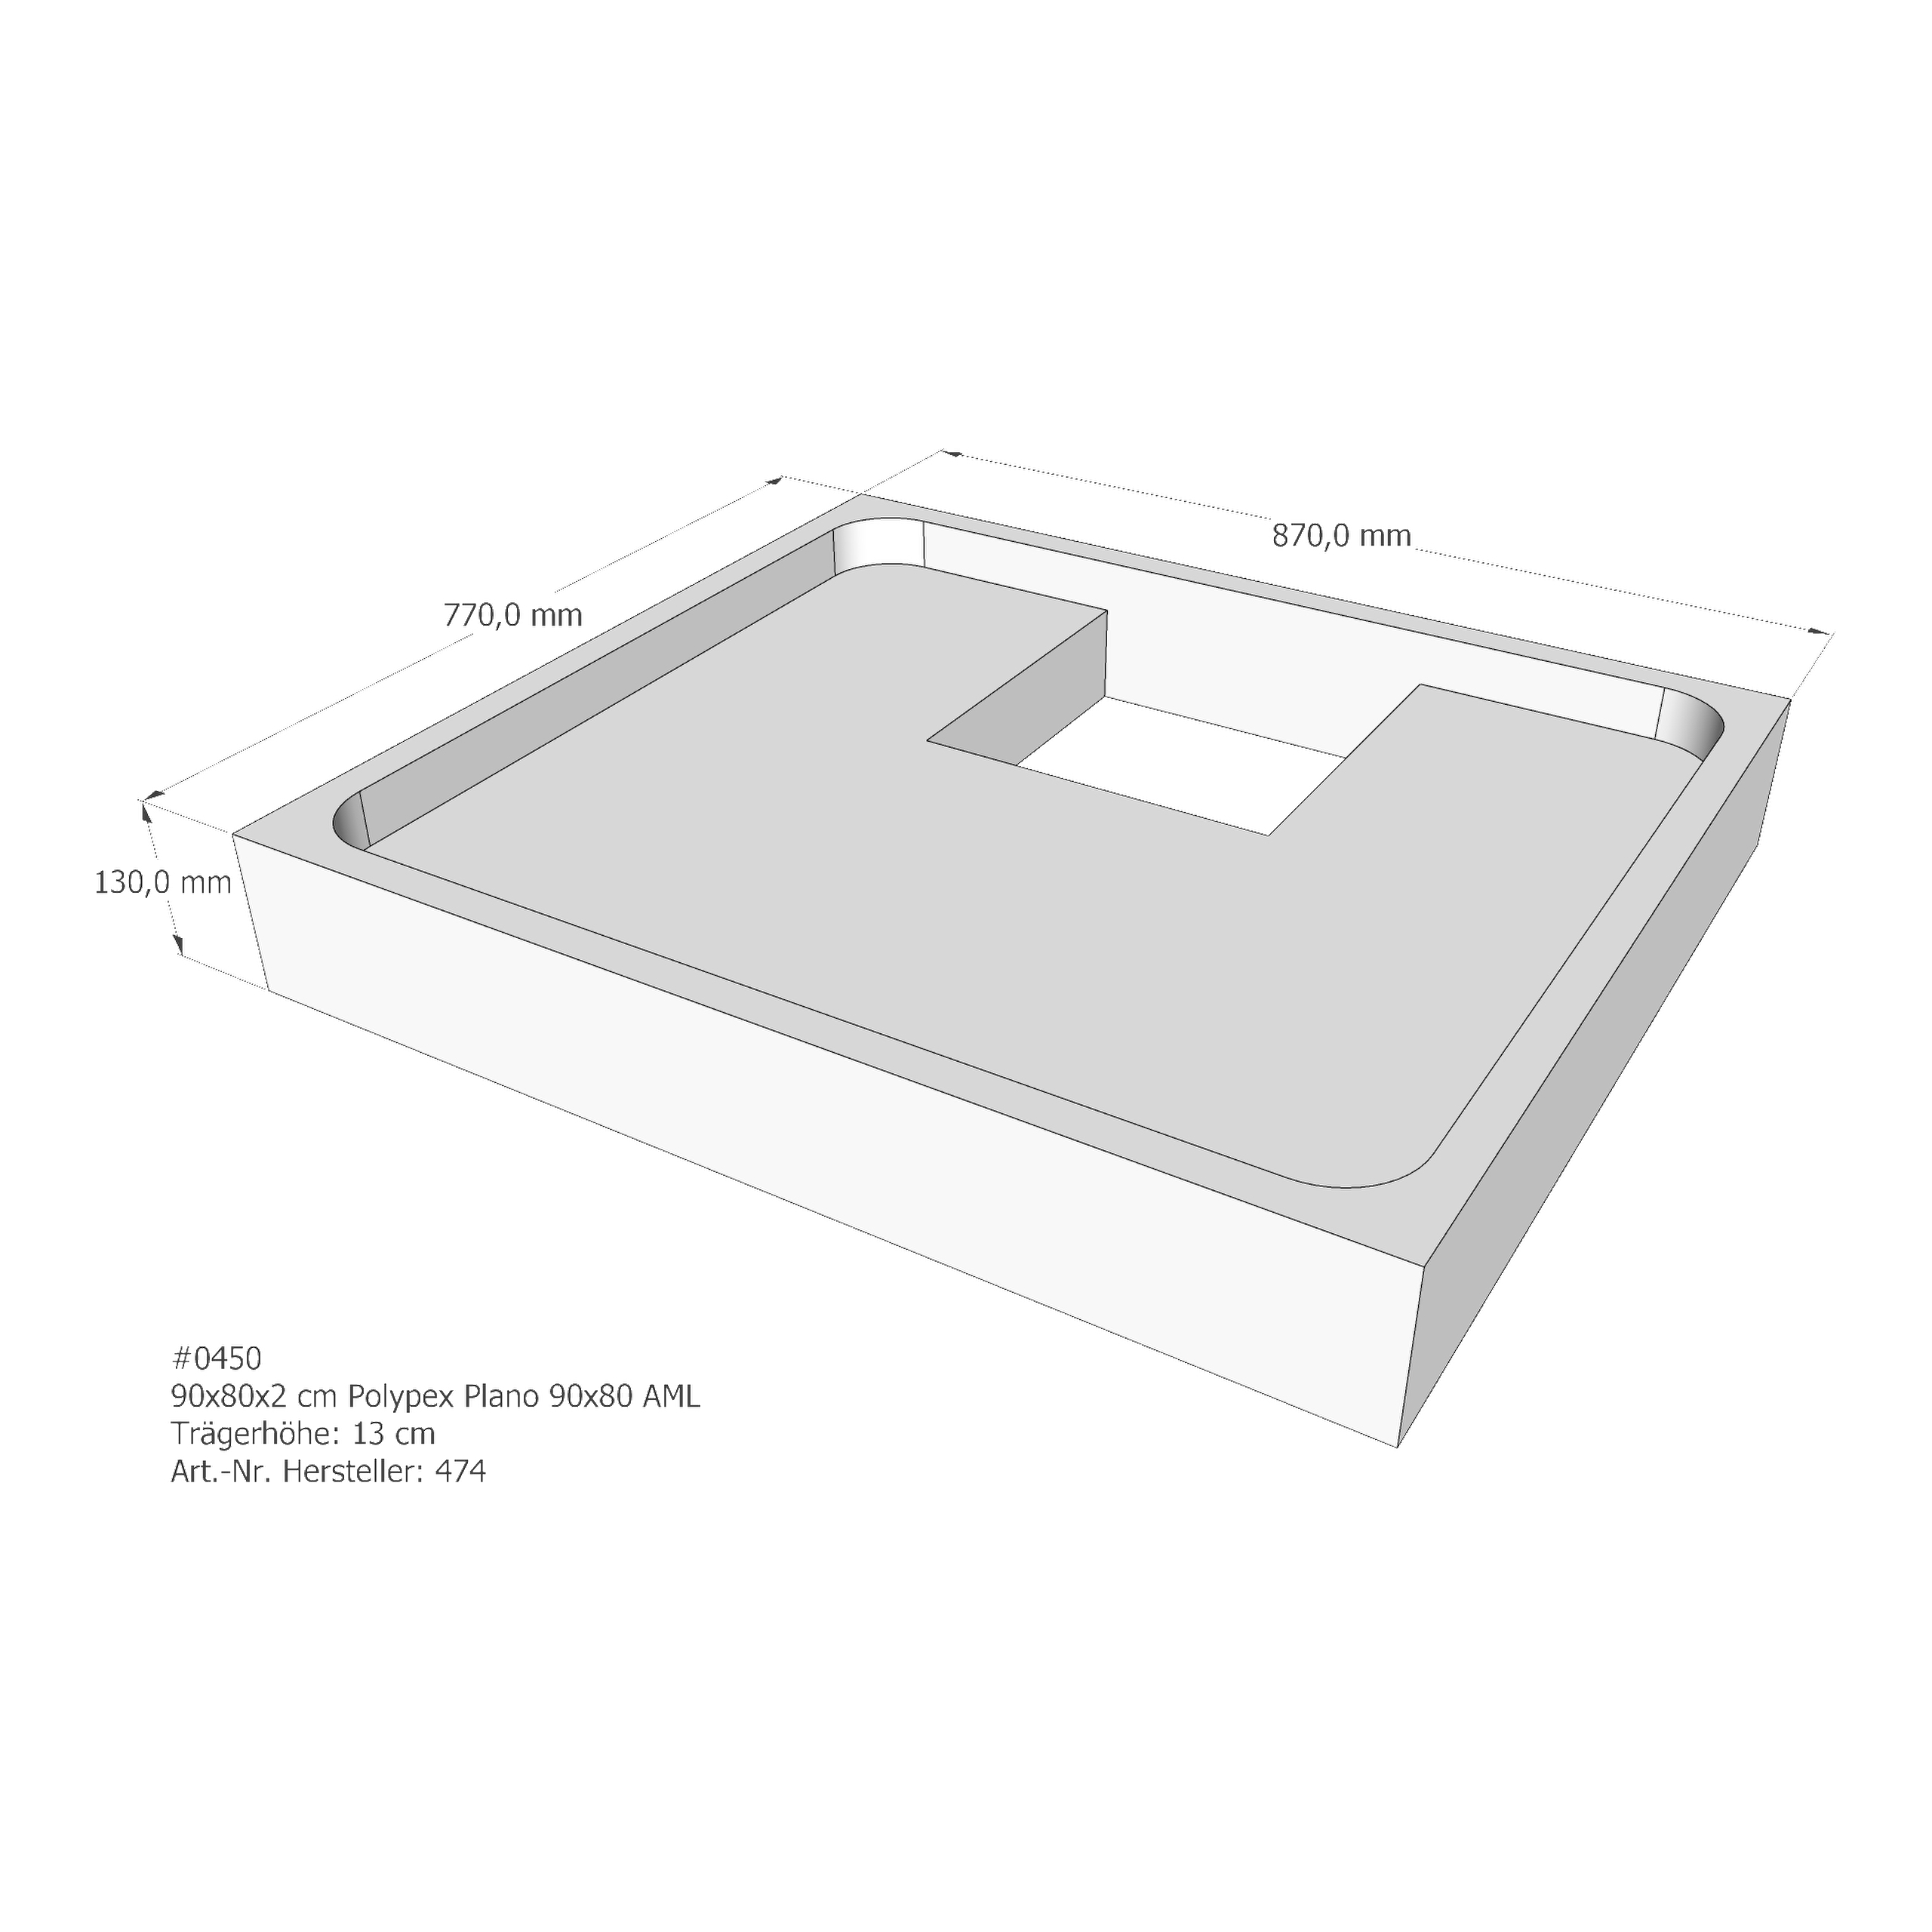 Duschwannenträger für Polypex Plano 90x80 90 × 80 × 2 cm